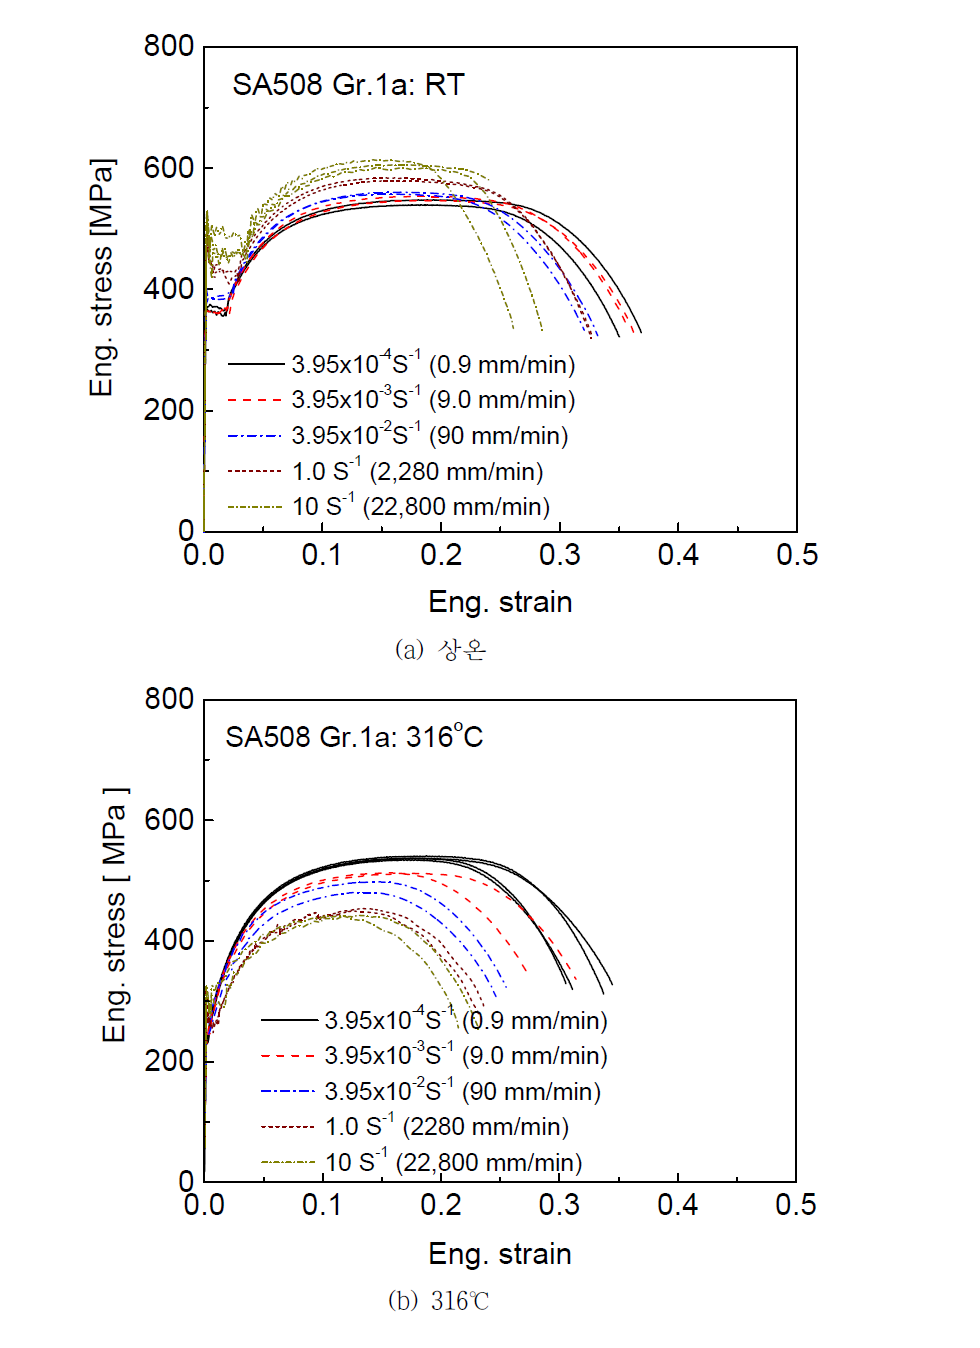 변형속도에 따른 SA508 Gr.1a 배관재의 공칭응력-공칭변형률 곡선